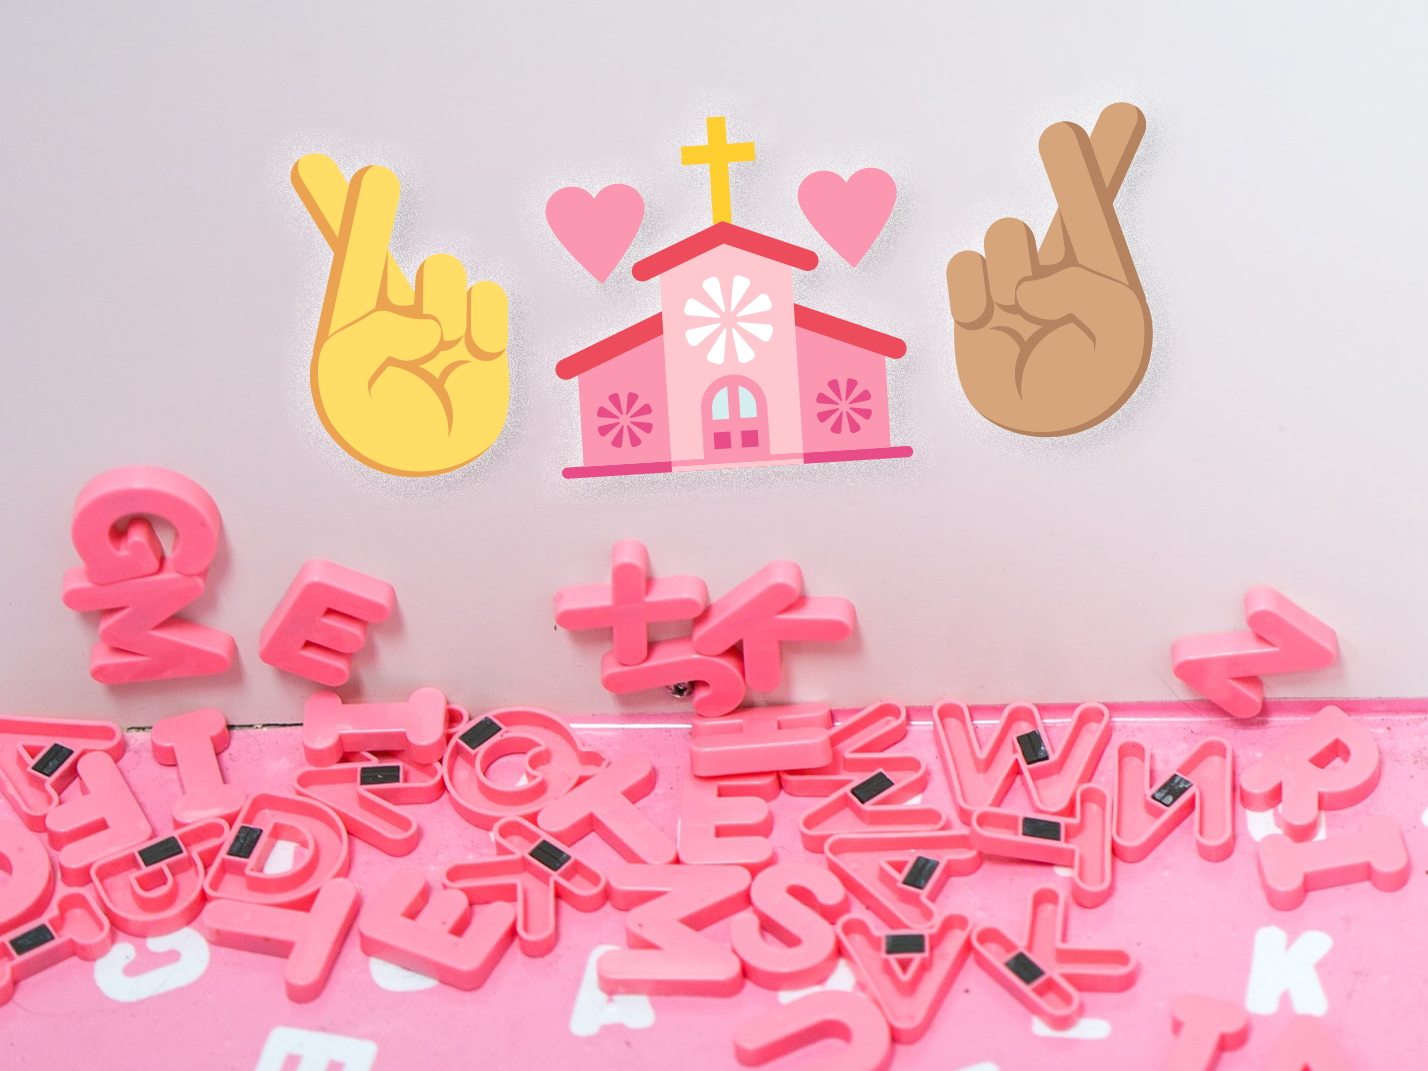 Vaaleanpunaisia kirjaimia ja käsi emojit samassa kuvassa